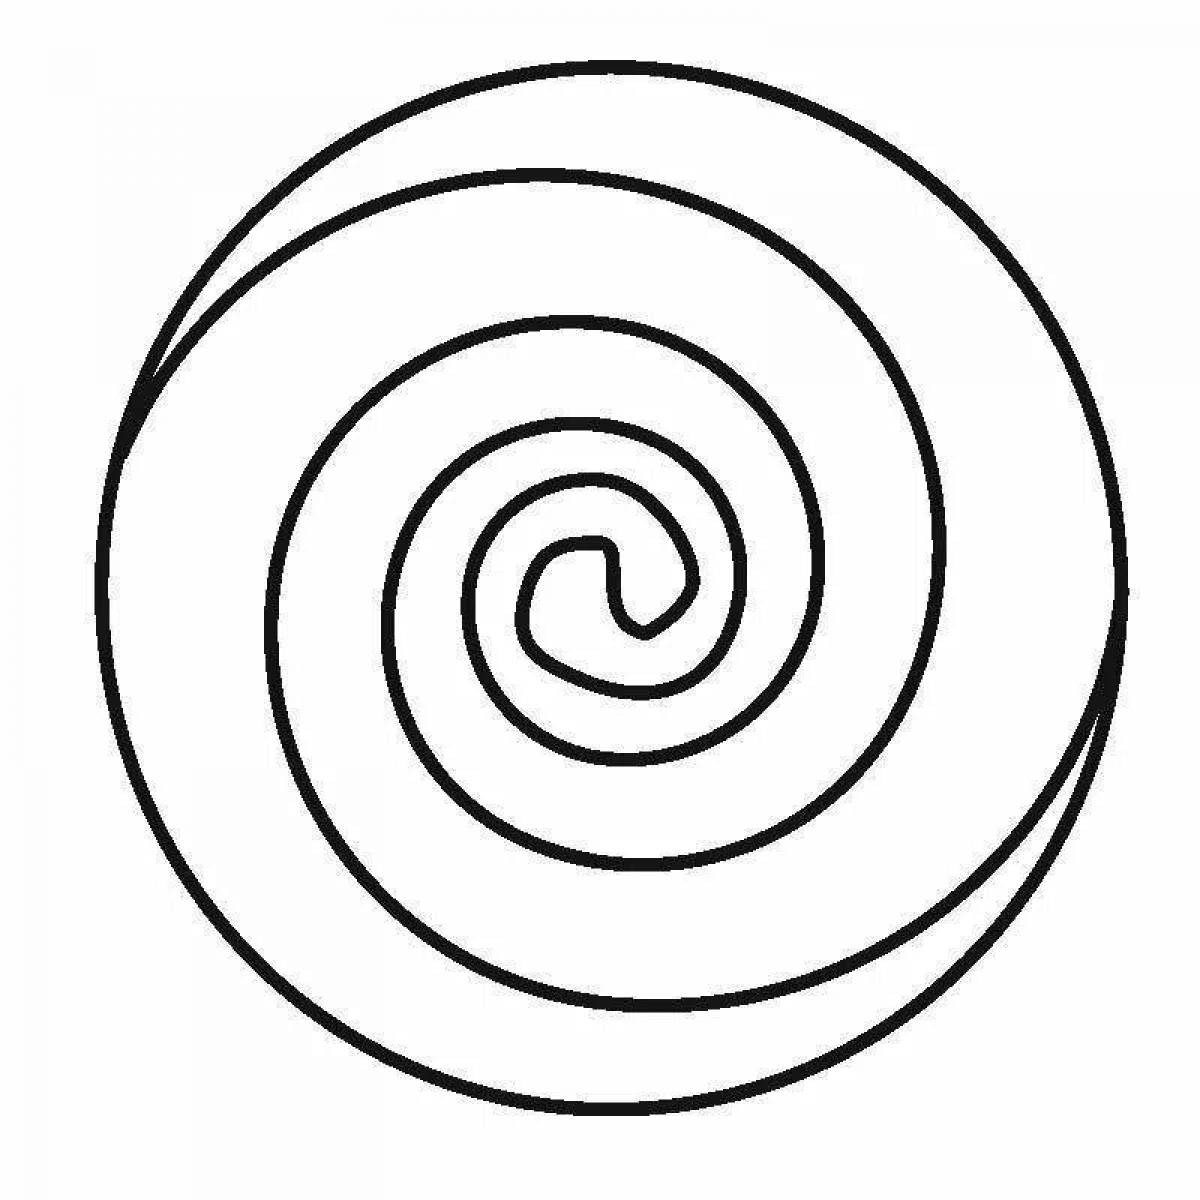 Привлекательная спираль на странице раскраски круга